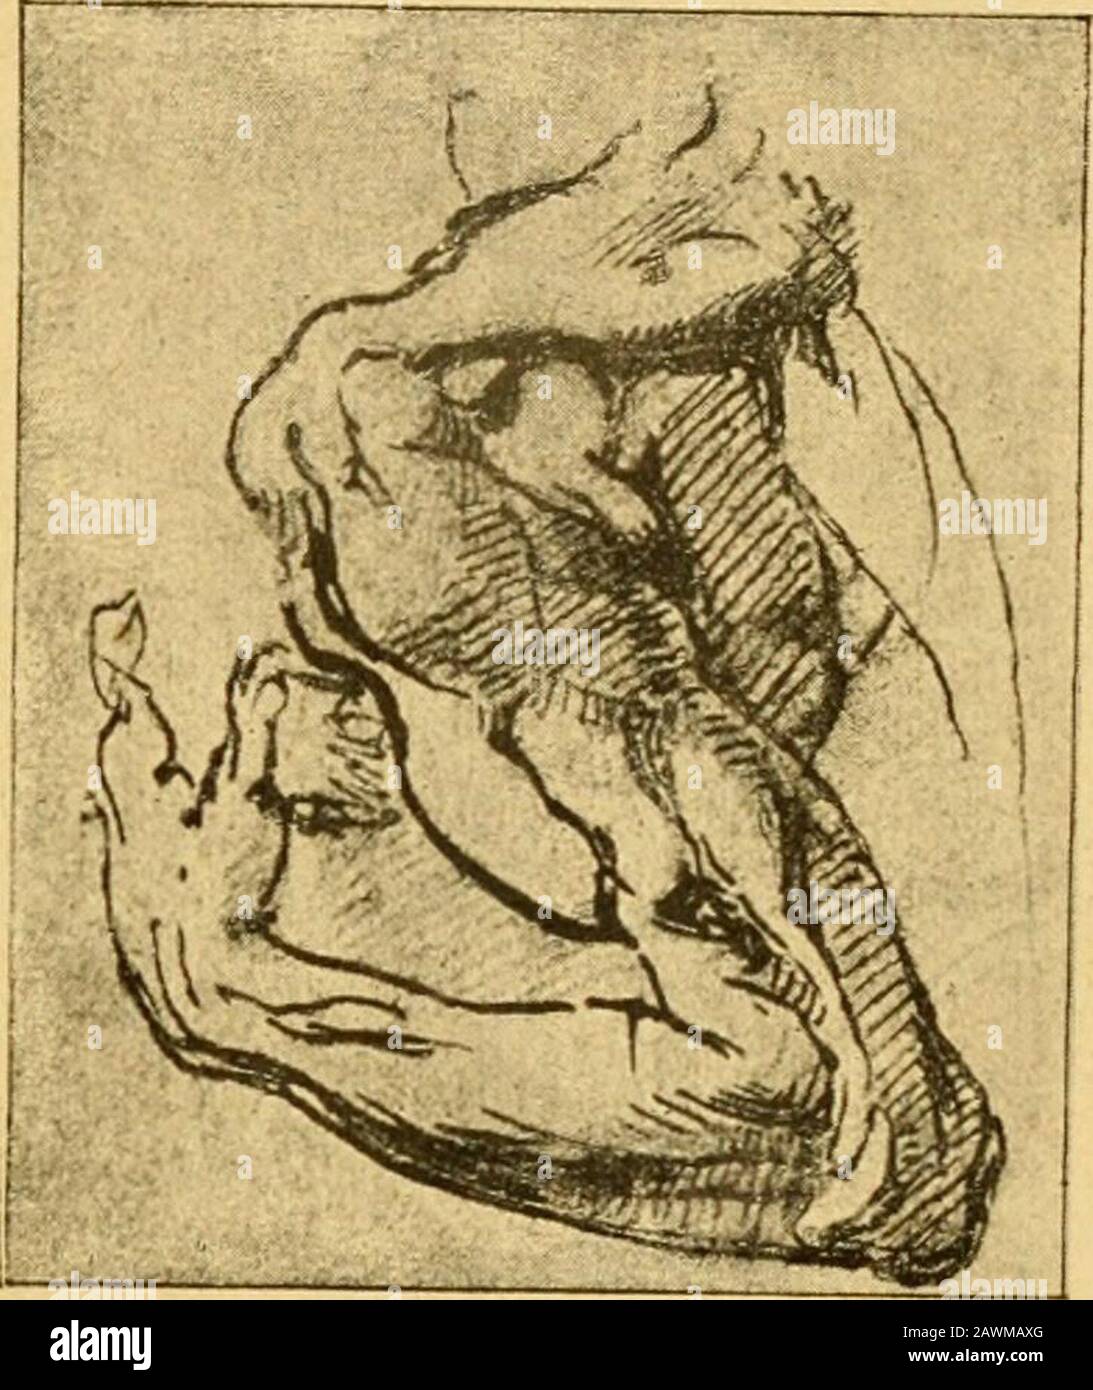 Histoire de l'anatomie plastique : les maitres, les livres et les écorchés . eintres, etc., t. V, p. 114. XVI« SIECLE. di tomie, dabord à Florence, puis à Rome. Il fut Tamidu célèbre anatomiste Colombo, qui professait à Romede i549 à iSSg. Nous reproduisons (fig. 9, 10 et 11) quelques-unsde ses dessins anato-miques; parmi cesétudes dune si admi-rable puissance,nous attirons parti-culièrement latten-tion sur certaines(fig. 11) qui sont duplus grand intérêt,car elles nous mon-trent les préoccupa-tions de lartiste àpropos de chaquesaillie musculaire,quil note dun signespécial, afin détablirune Stock Photo